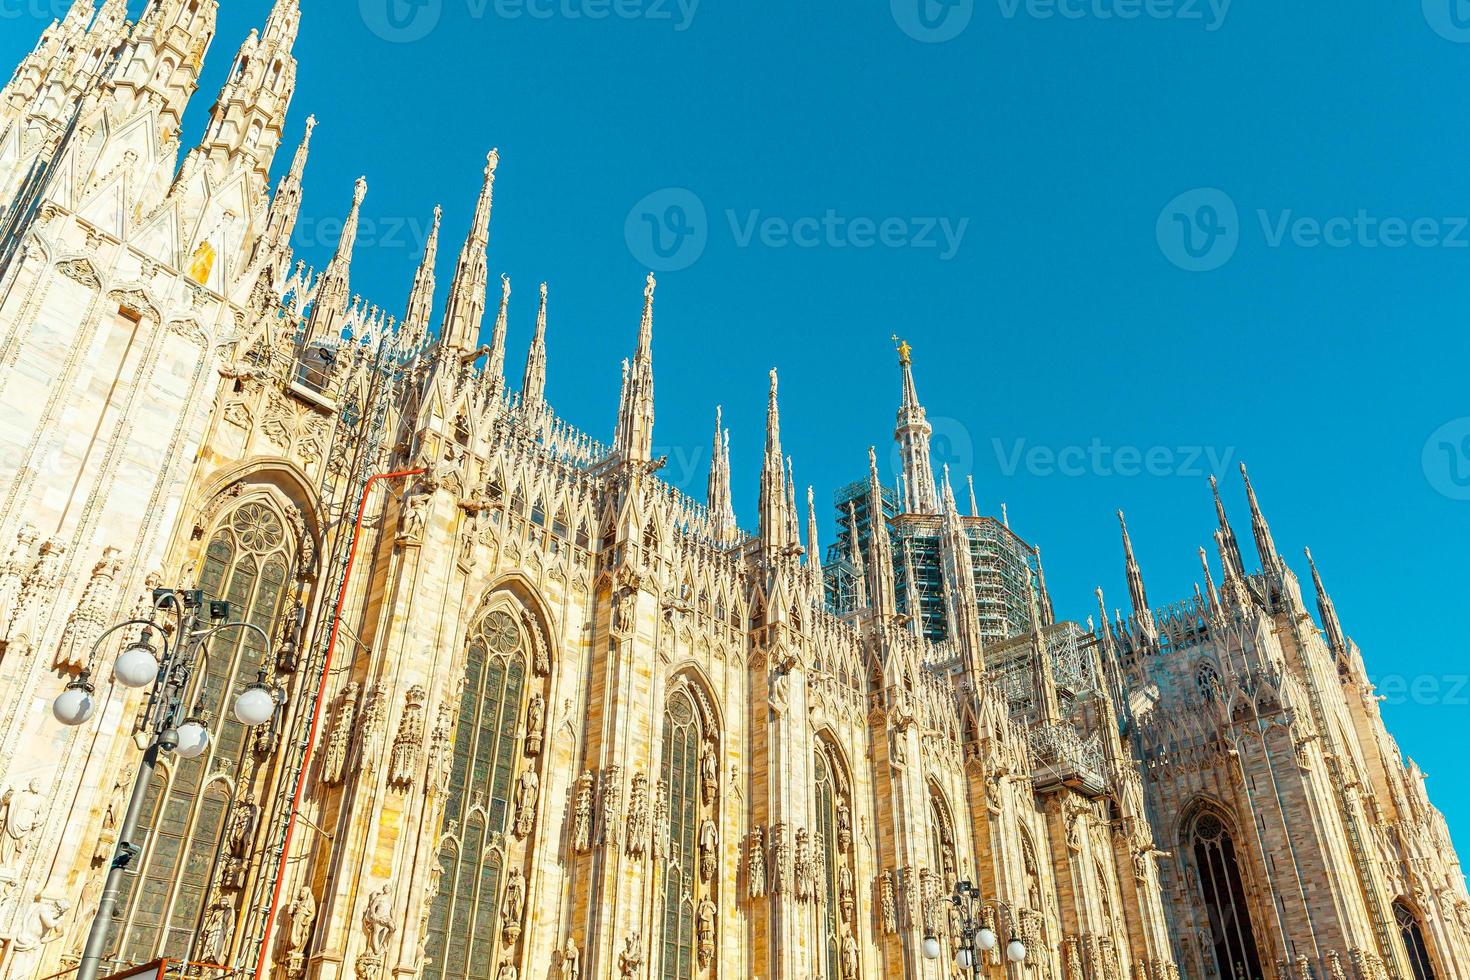 beroemde kerk Milaan kathedraal duomo di milano met gotische torenspitsen en witmarmeren beelden. top toeristische attractie op piazza in Milaan, Lombardije, Italië. brede kijkhoek van oude gotische architectuur en kunst foto